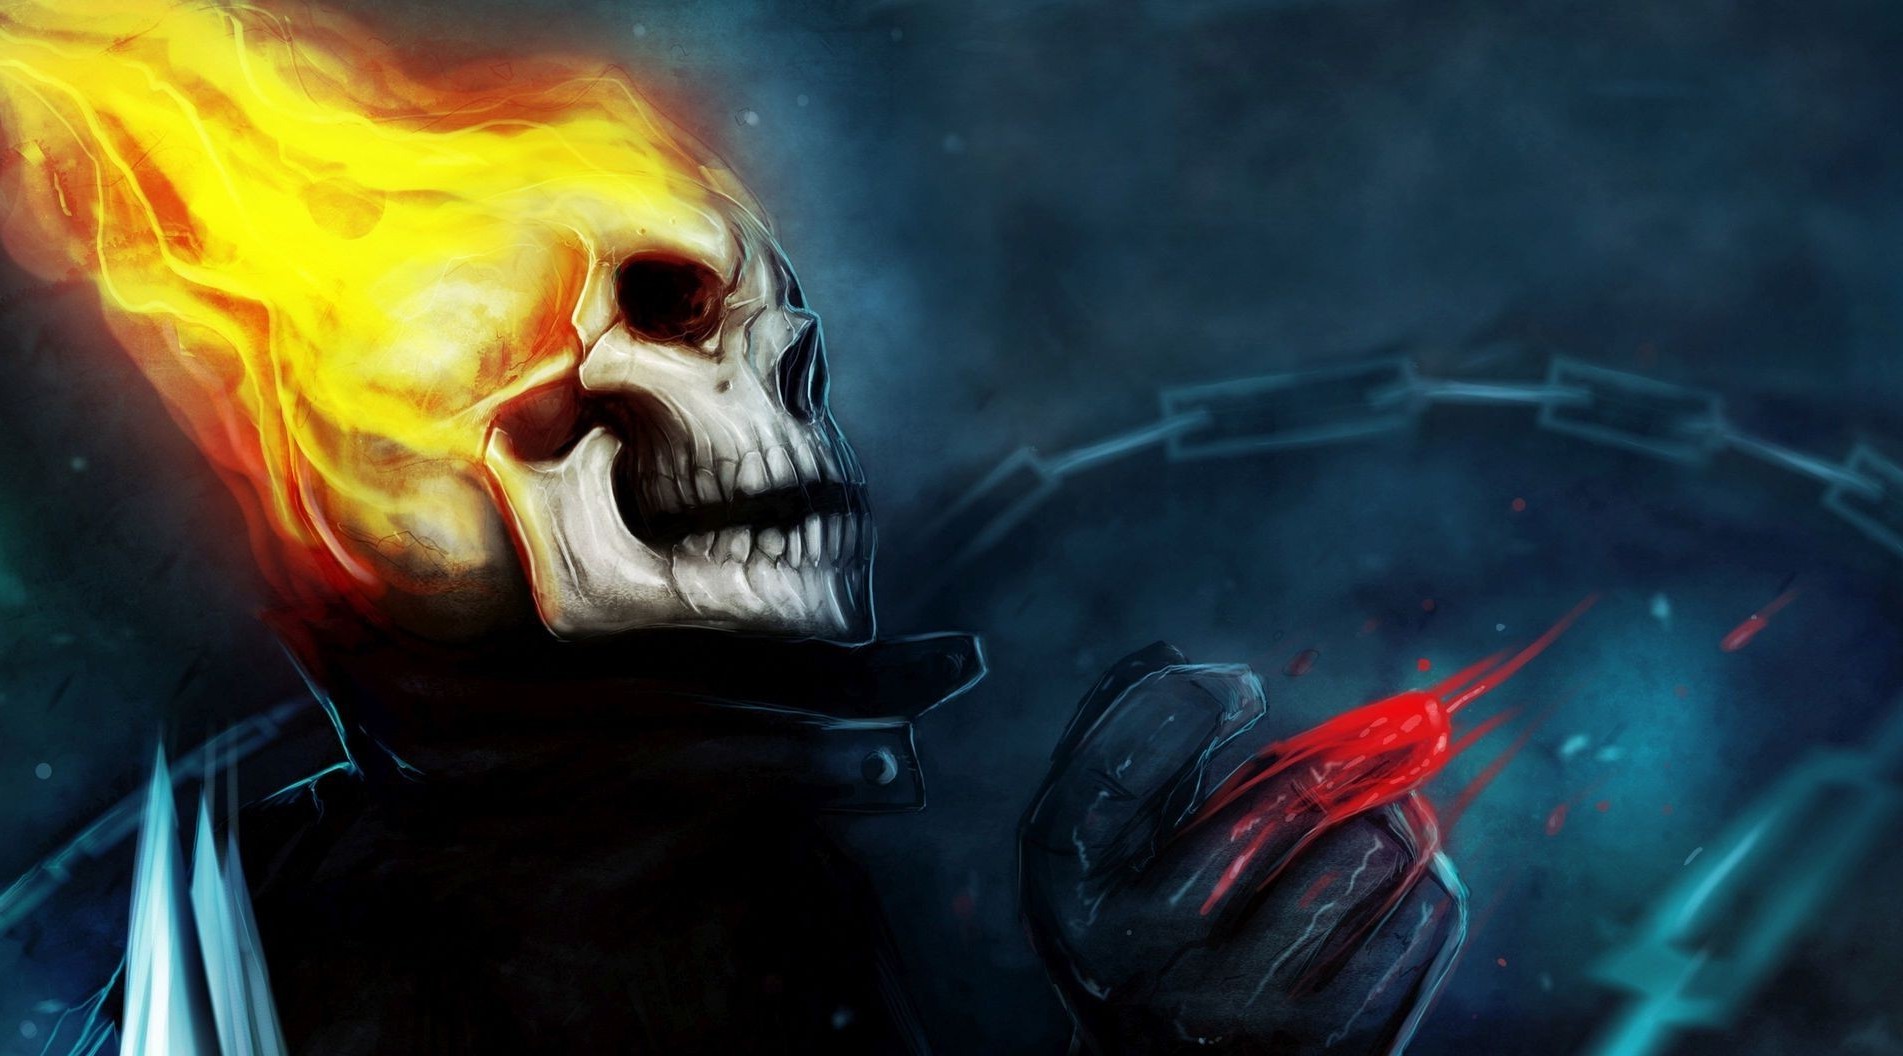 Skull Fantasy Art Artwork Ghost Rider Wallpaper HD